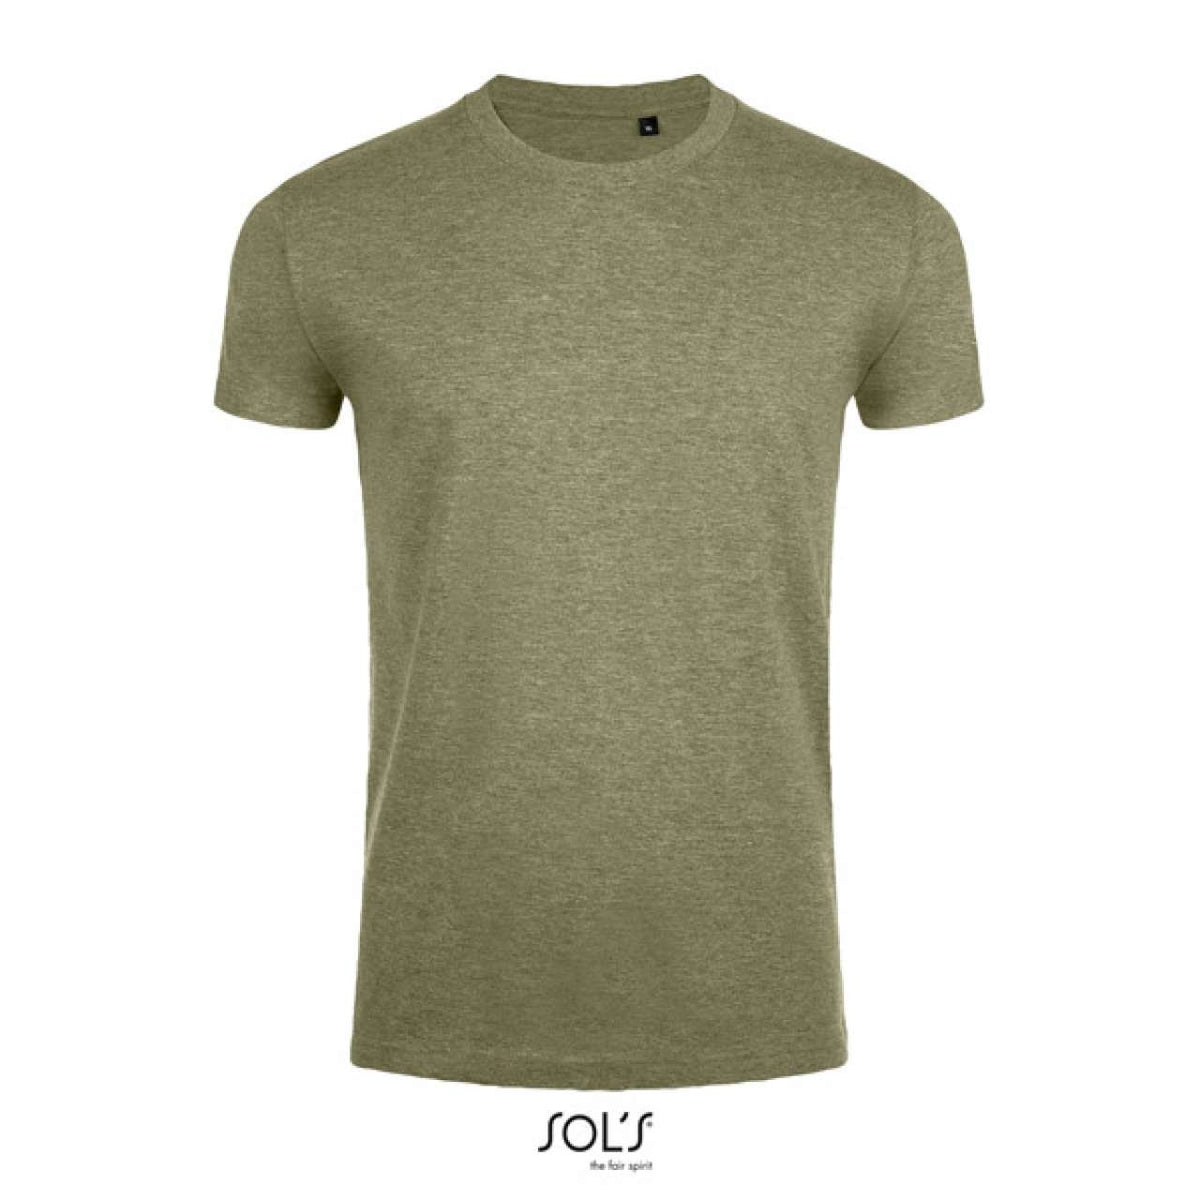 SOL'S Herren T-Shirt Round Neck Basic Oberteil Shirt Rundhals